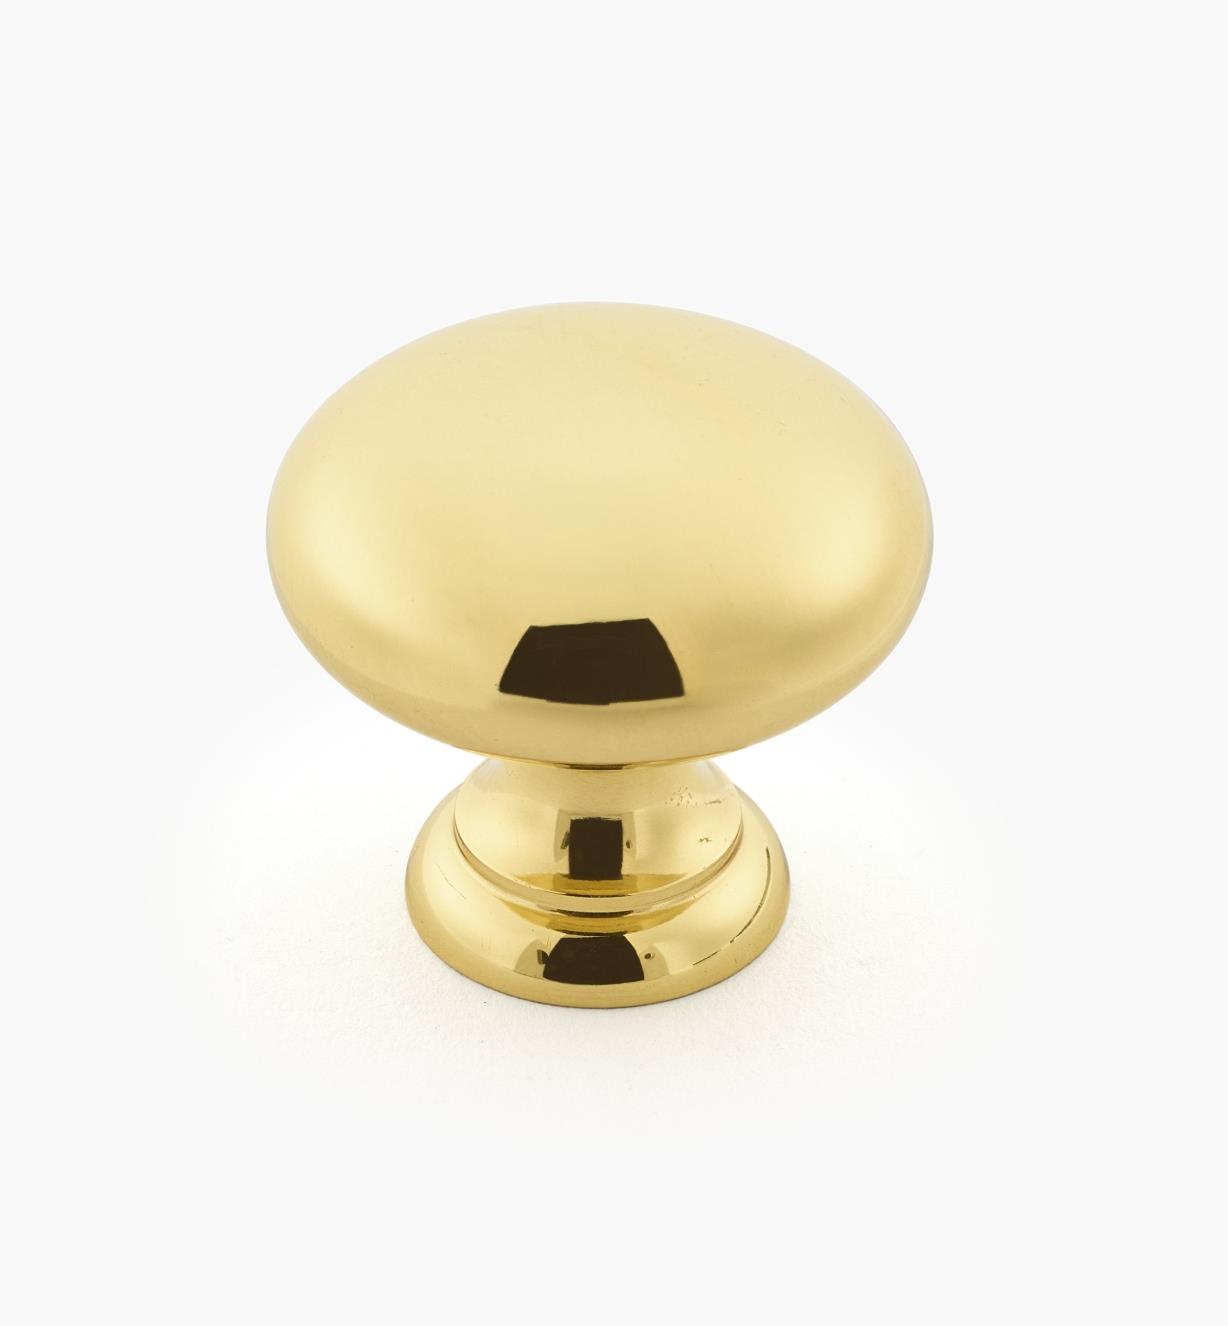 01W1601 - Round Polished Brass Knob